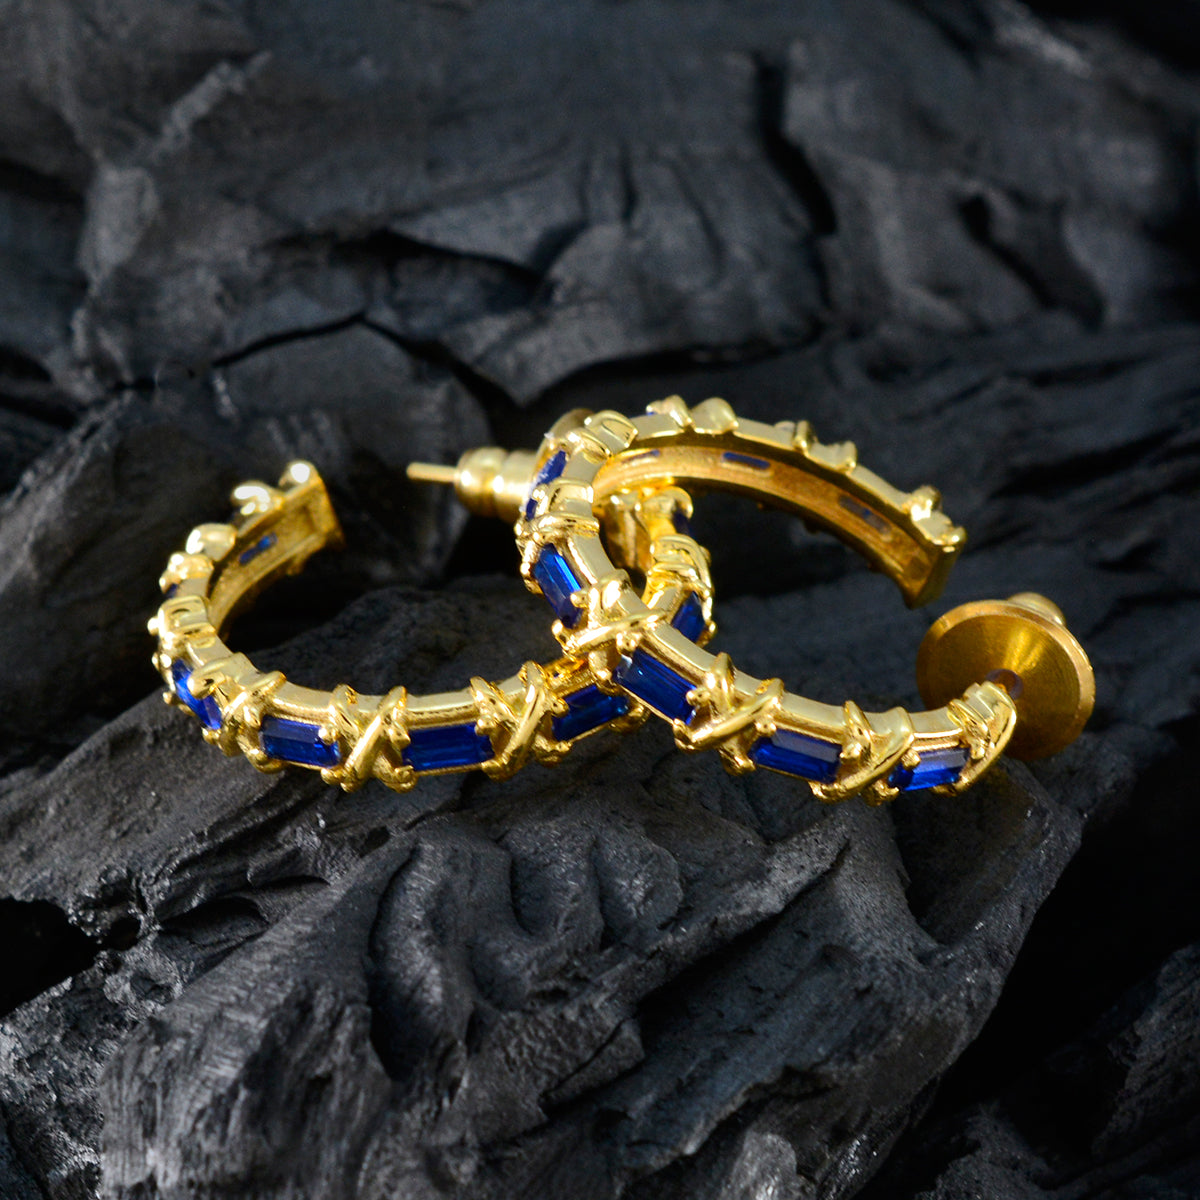 riyo décoratif en argent sterling boucle d'oreille pour demoiselle bleu saphir cz boucle d'oreille lunette réglage bleu boucle d'oreille stud boucle d'oreille